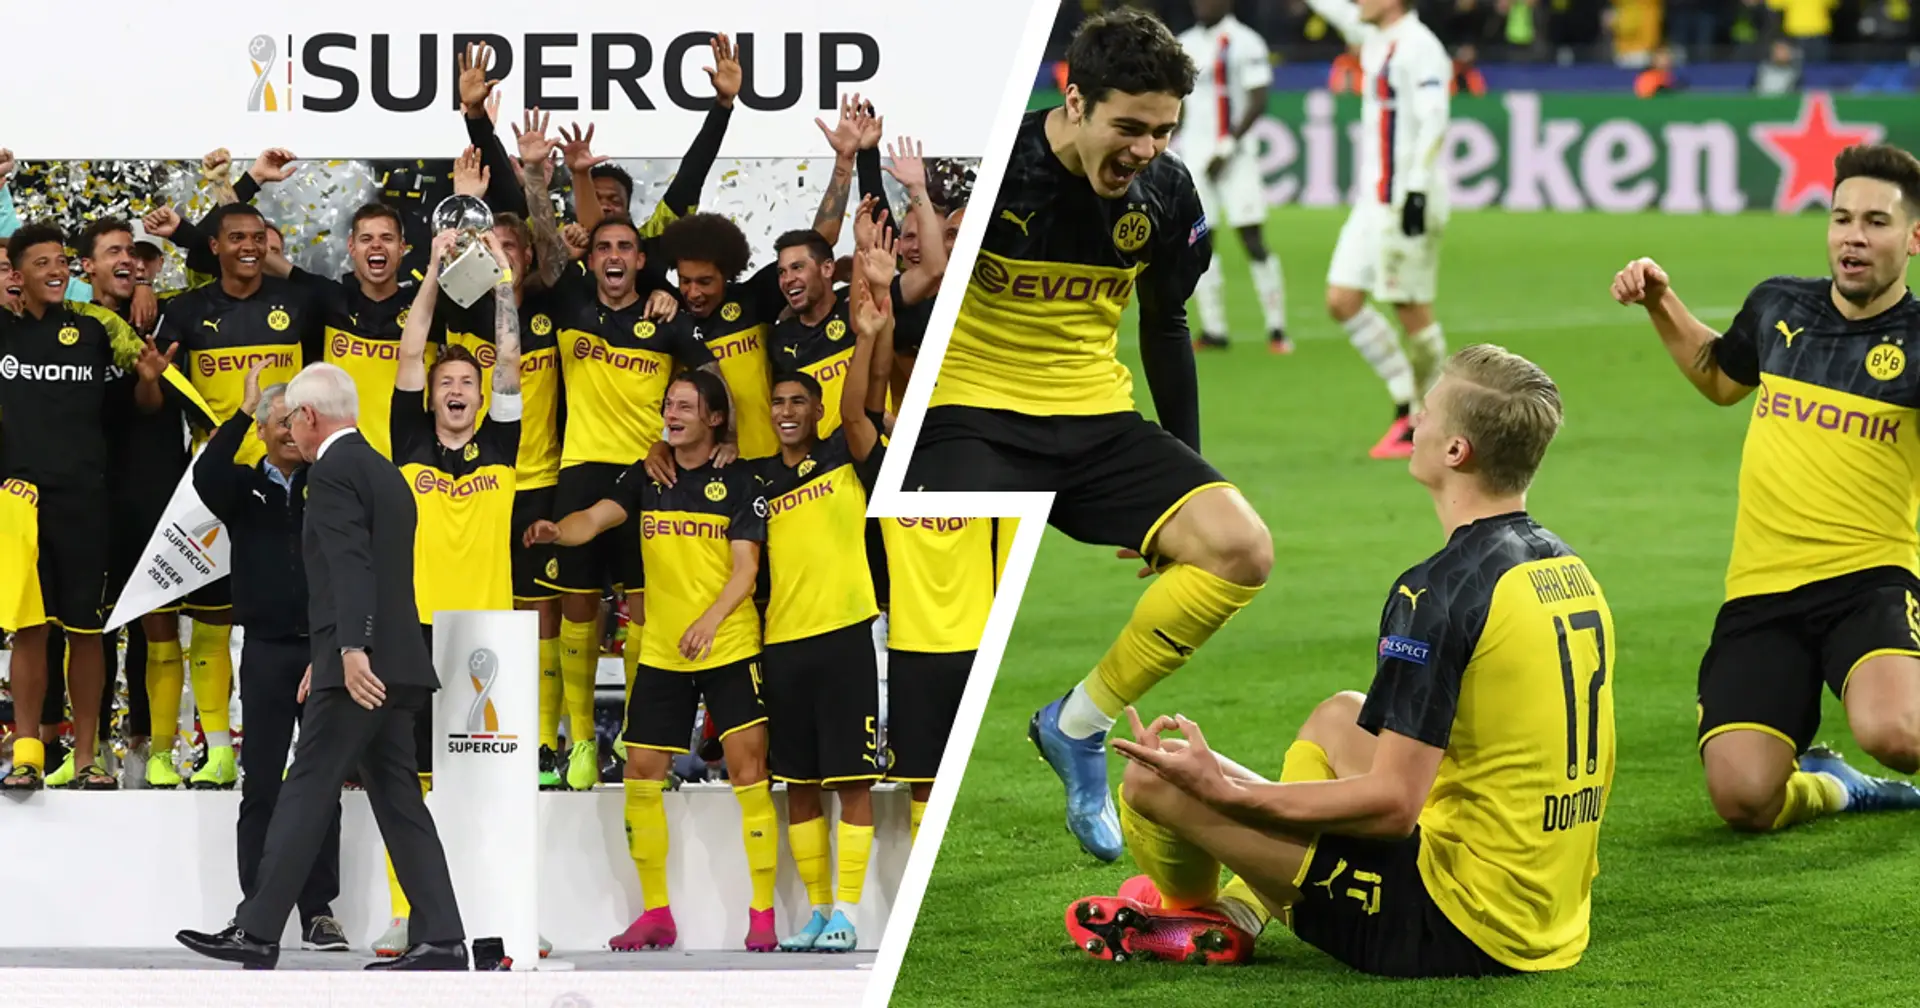 Supercup-Victory, Kantersieg gegen Atletico und mehr: Die 5 besten BVB-Spiele unter Lucien Favre